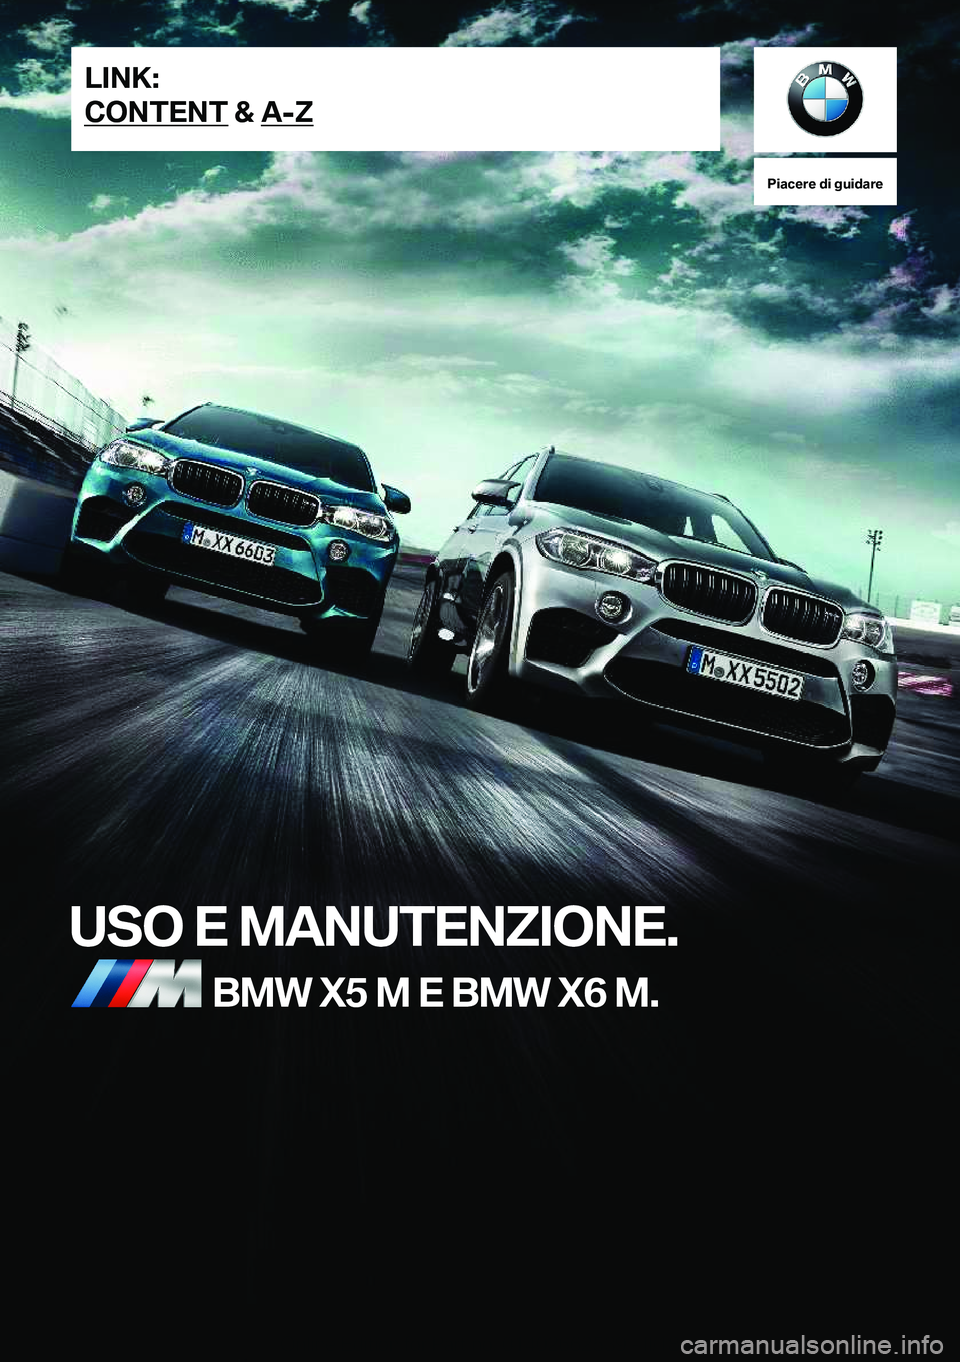 BMW X5 M 2018  Libretti Di Uso E manutenzione (in Italian) �P�i�a�c�e�r�e��d�i��g�u�i�d�a�r�e
�U�S�O��E��M�A�N�U�T�E�N�Z�I�O�N�E�.�B�M�W��X�5��M��E��B�M�W��X�6��M�.�L�I�N�K�:
�C�O�N�T�E�N�T��&��A�-�Z�O�n�l�i�n�e� �E�d�i�t�i�o�n� �f�o�r� �P�a�r�t� 